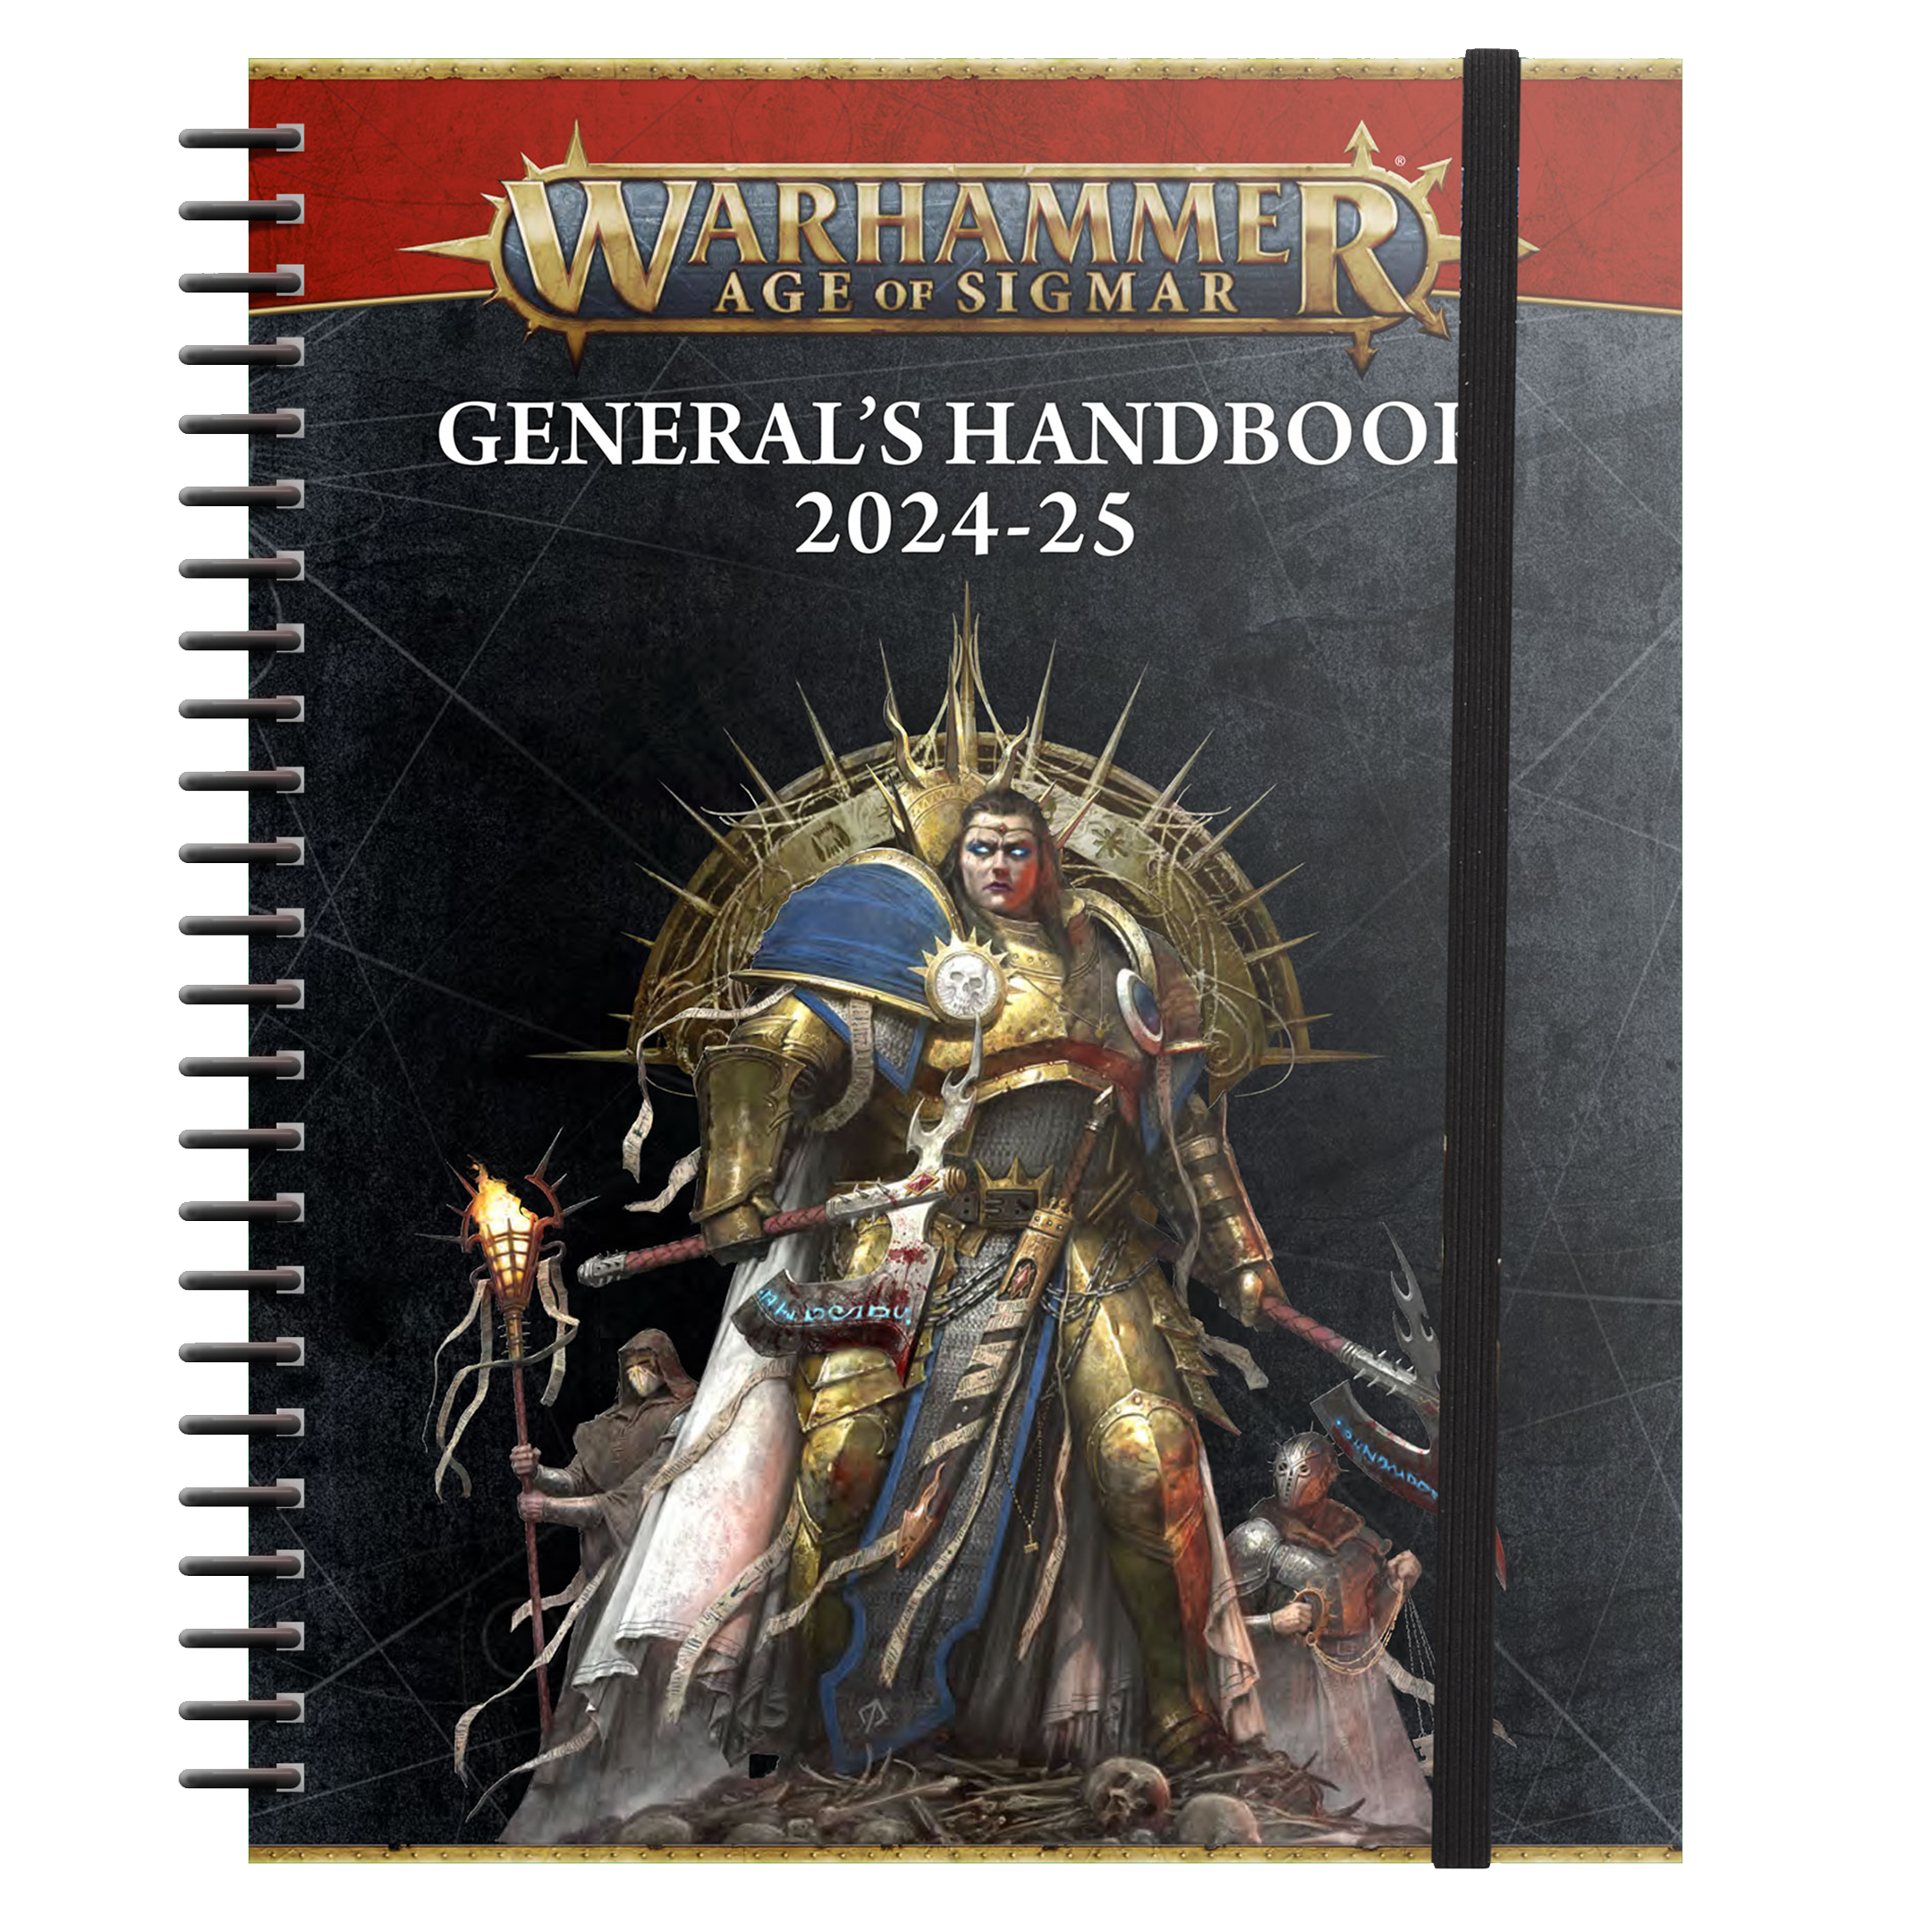 General's Handbook